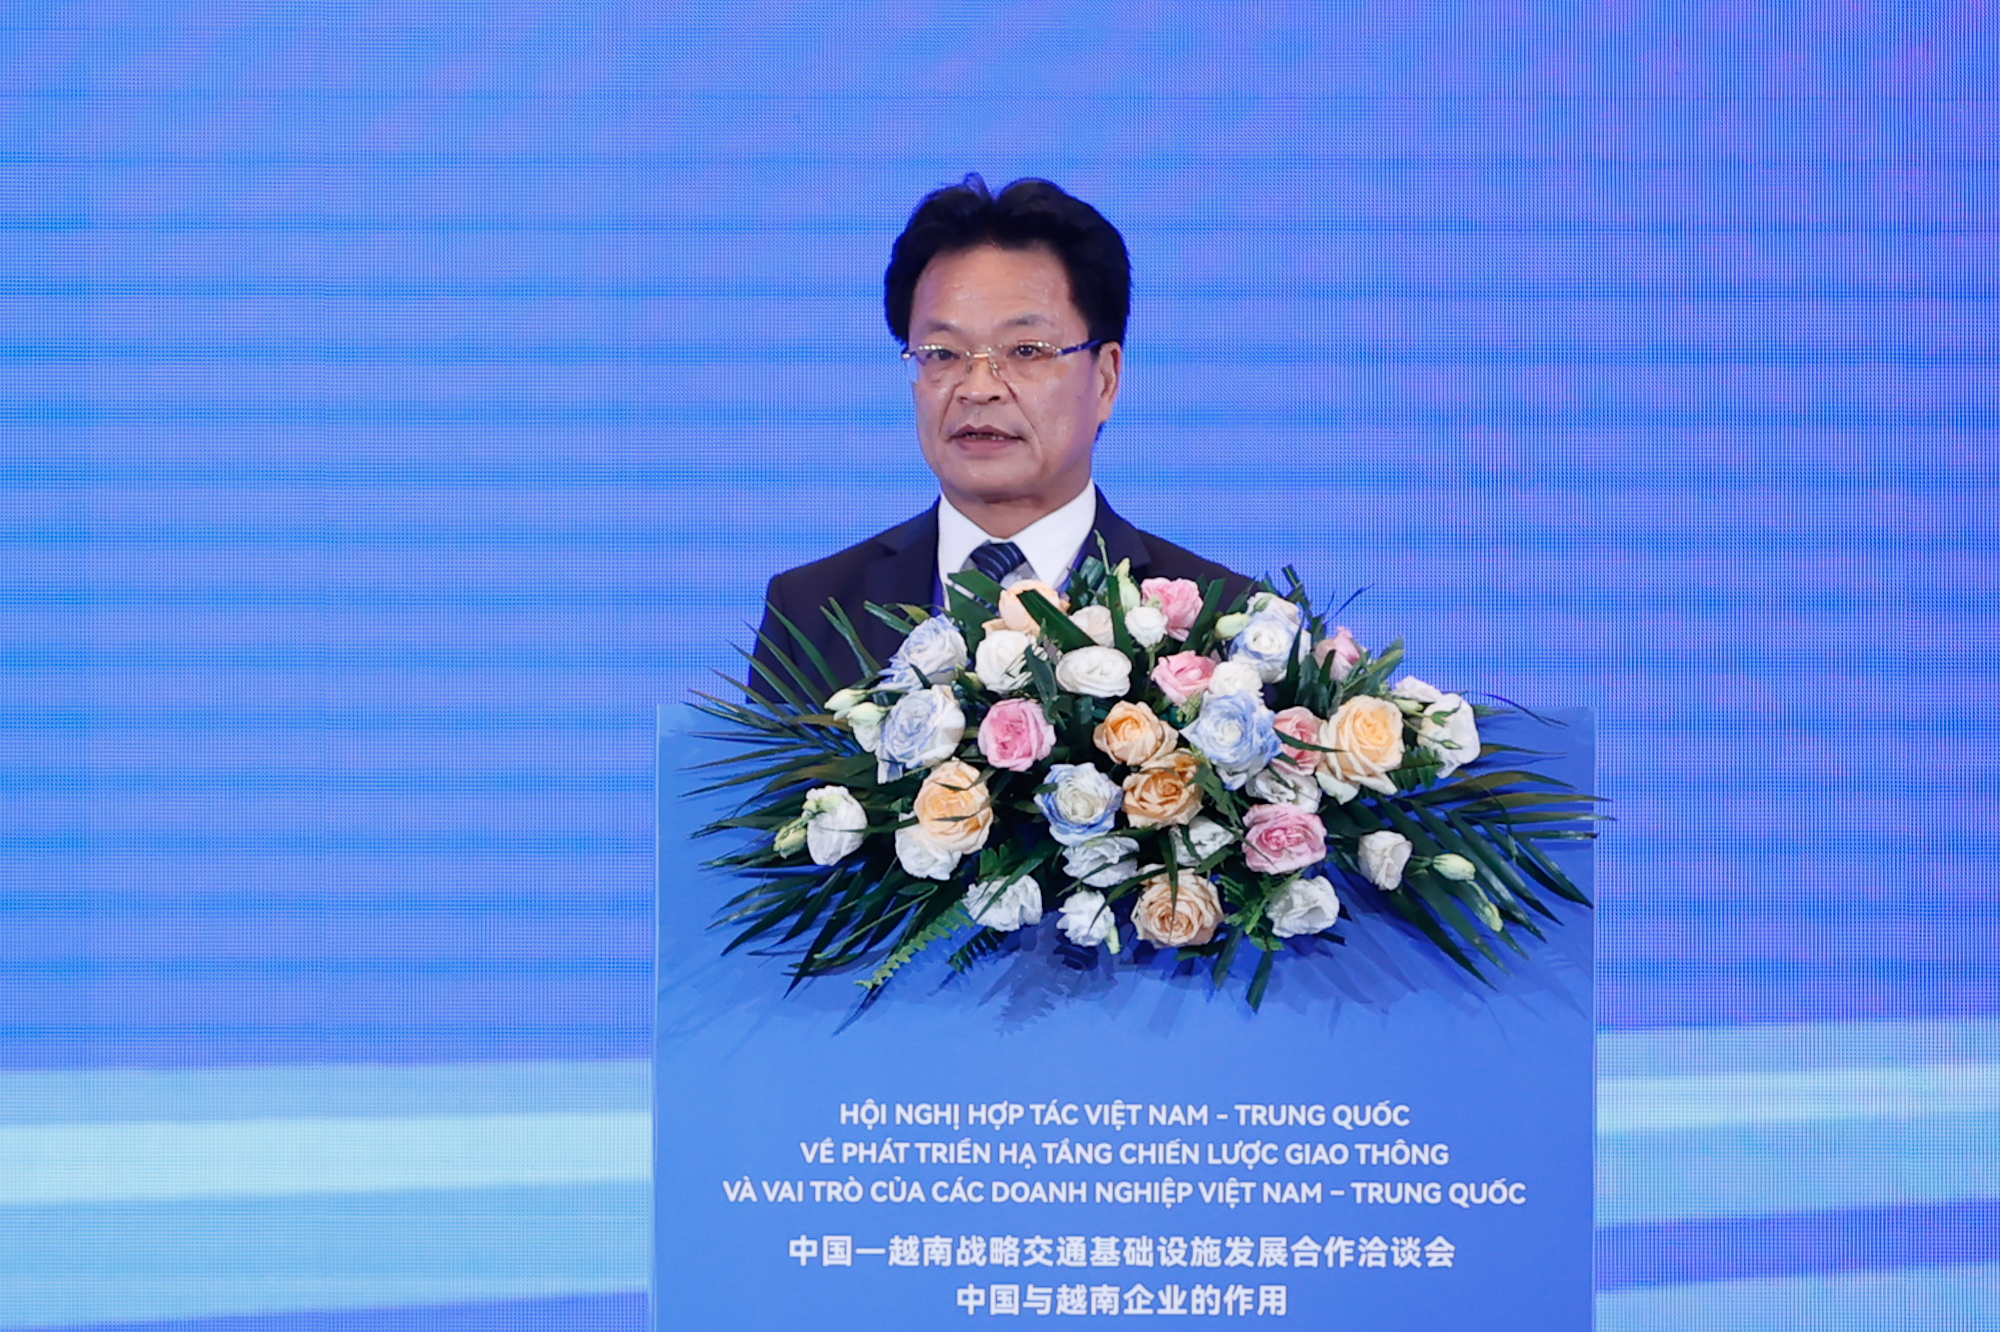 Chủ tịch HĐTV Tổng công ty Đường sắt Việt Nam Đặng Sỹ Mạnh phát biểu tại hội nghị - Ảnh: VGP/Nhật Bắc